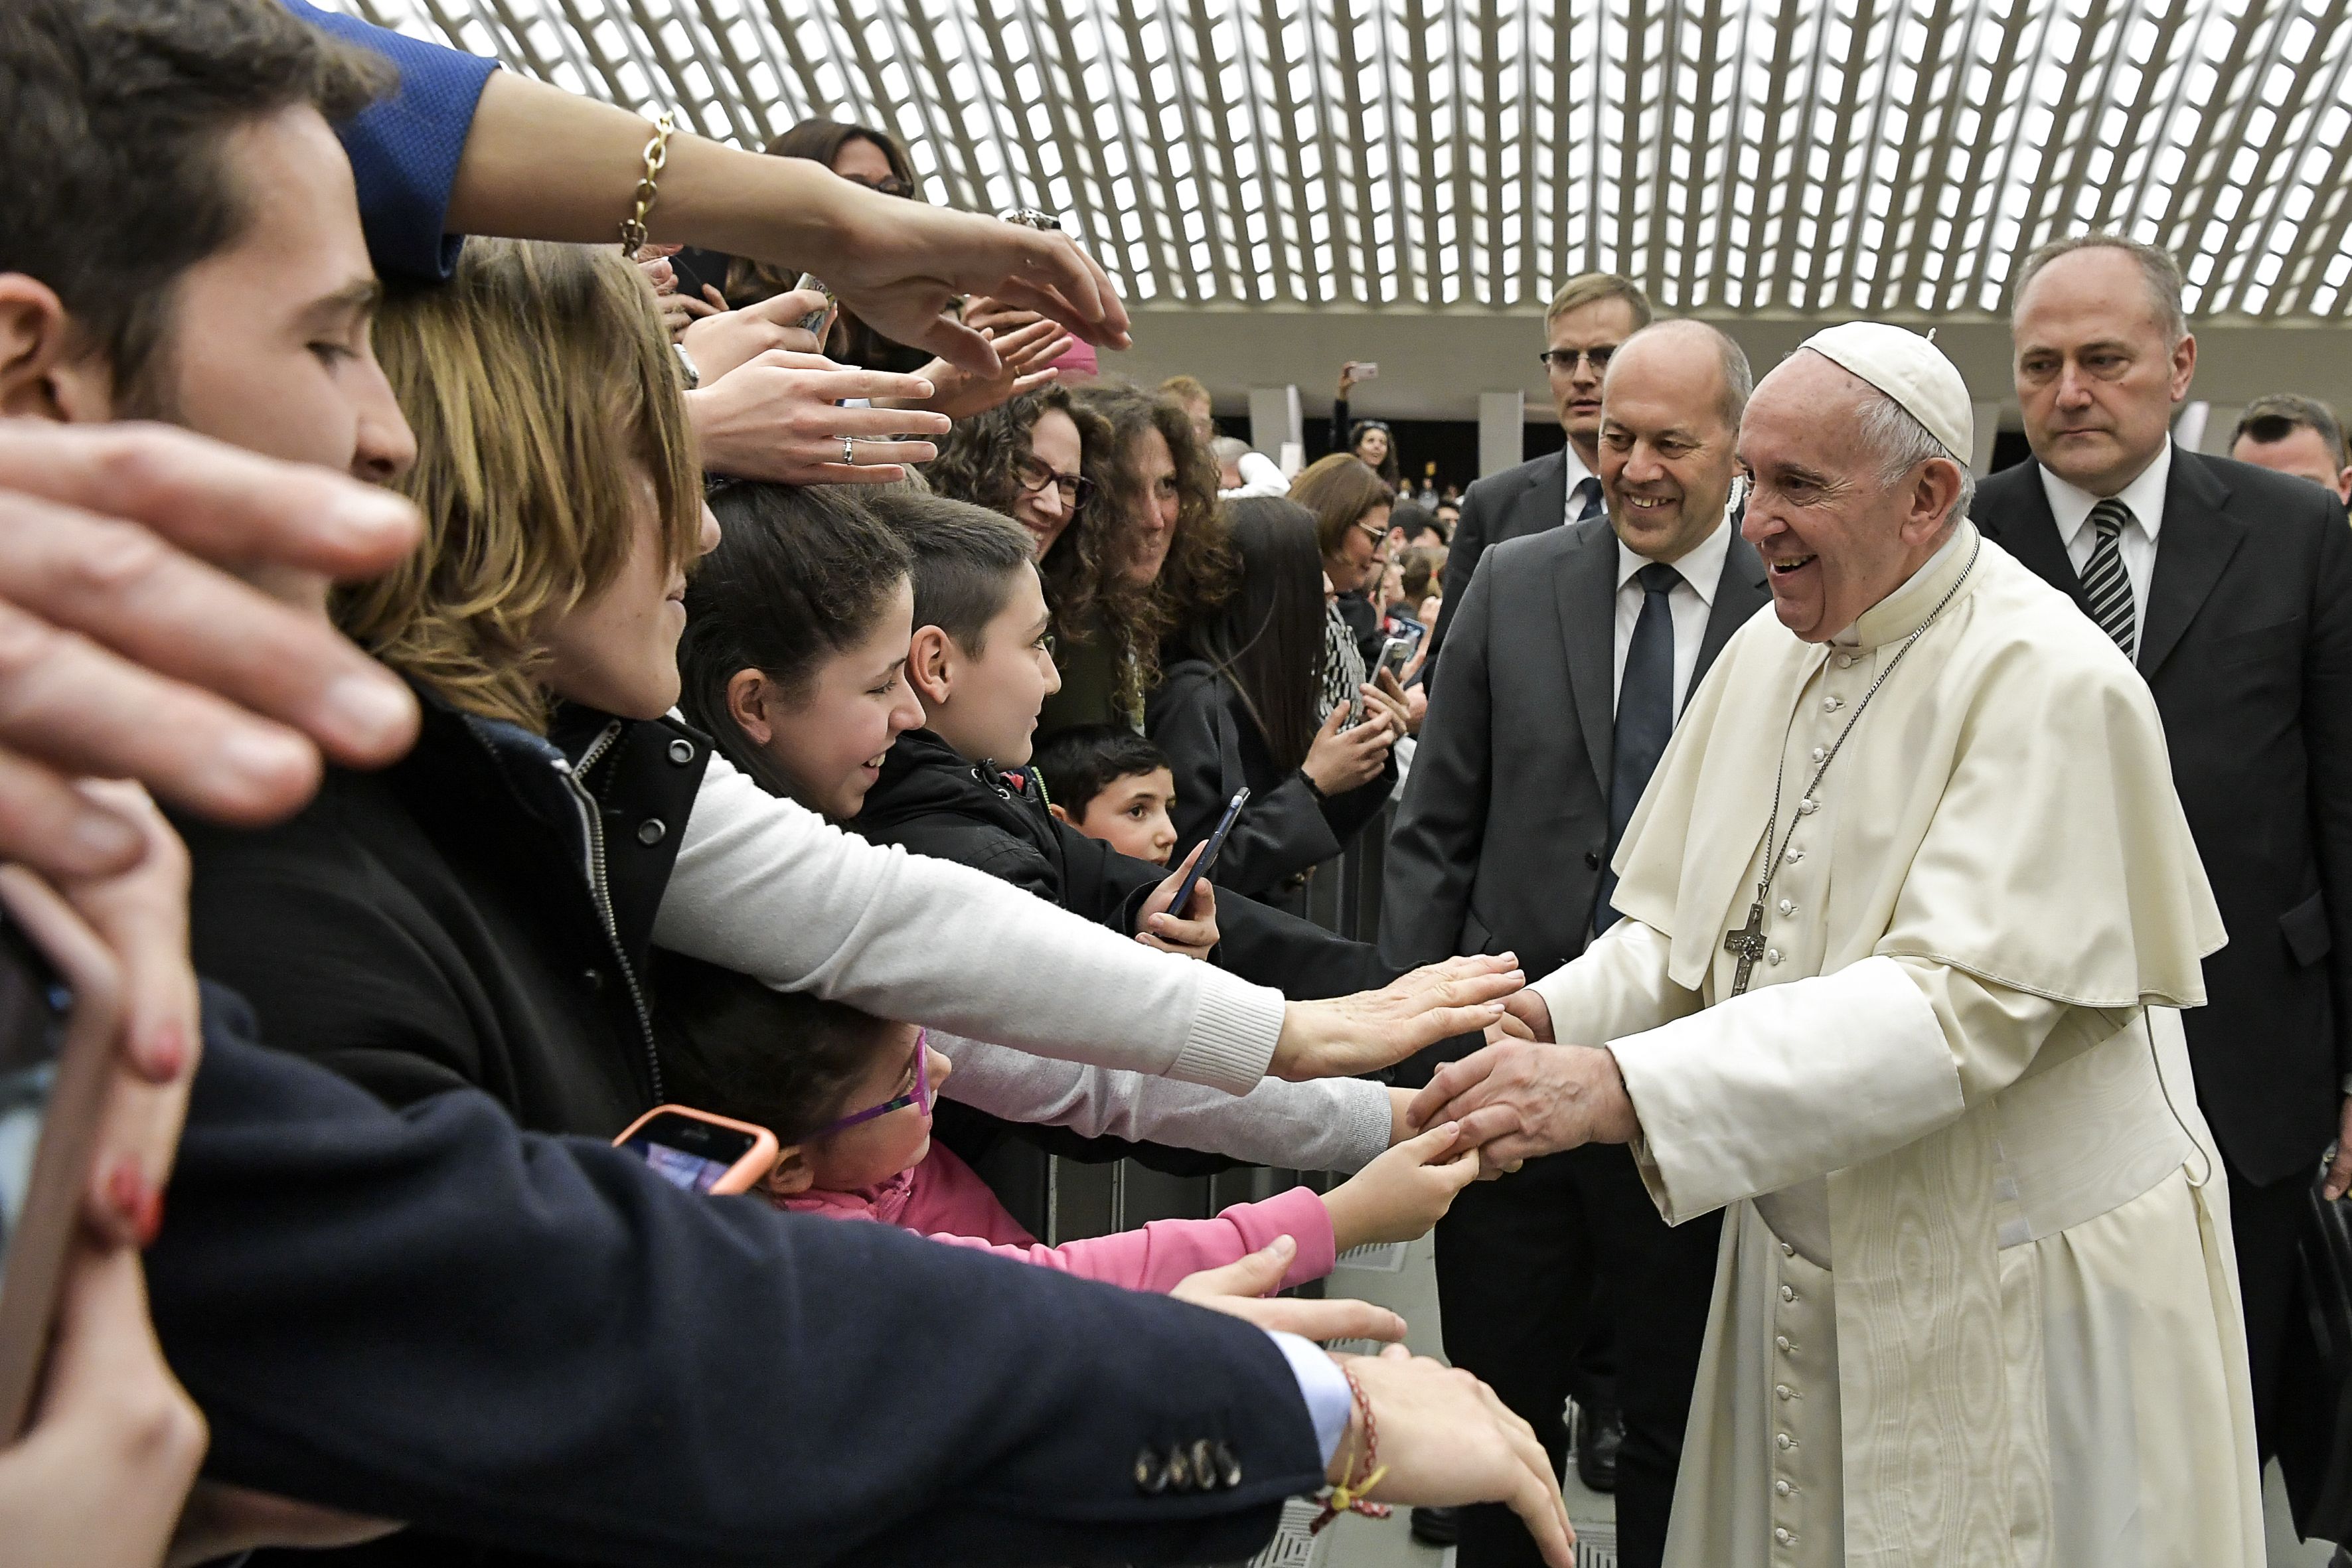  Education : « Libérez-vous de la dépendance au portable ! » lance le pape à des lycéens  DPF130419_19